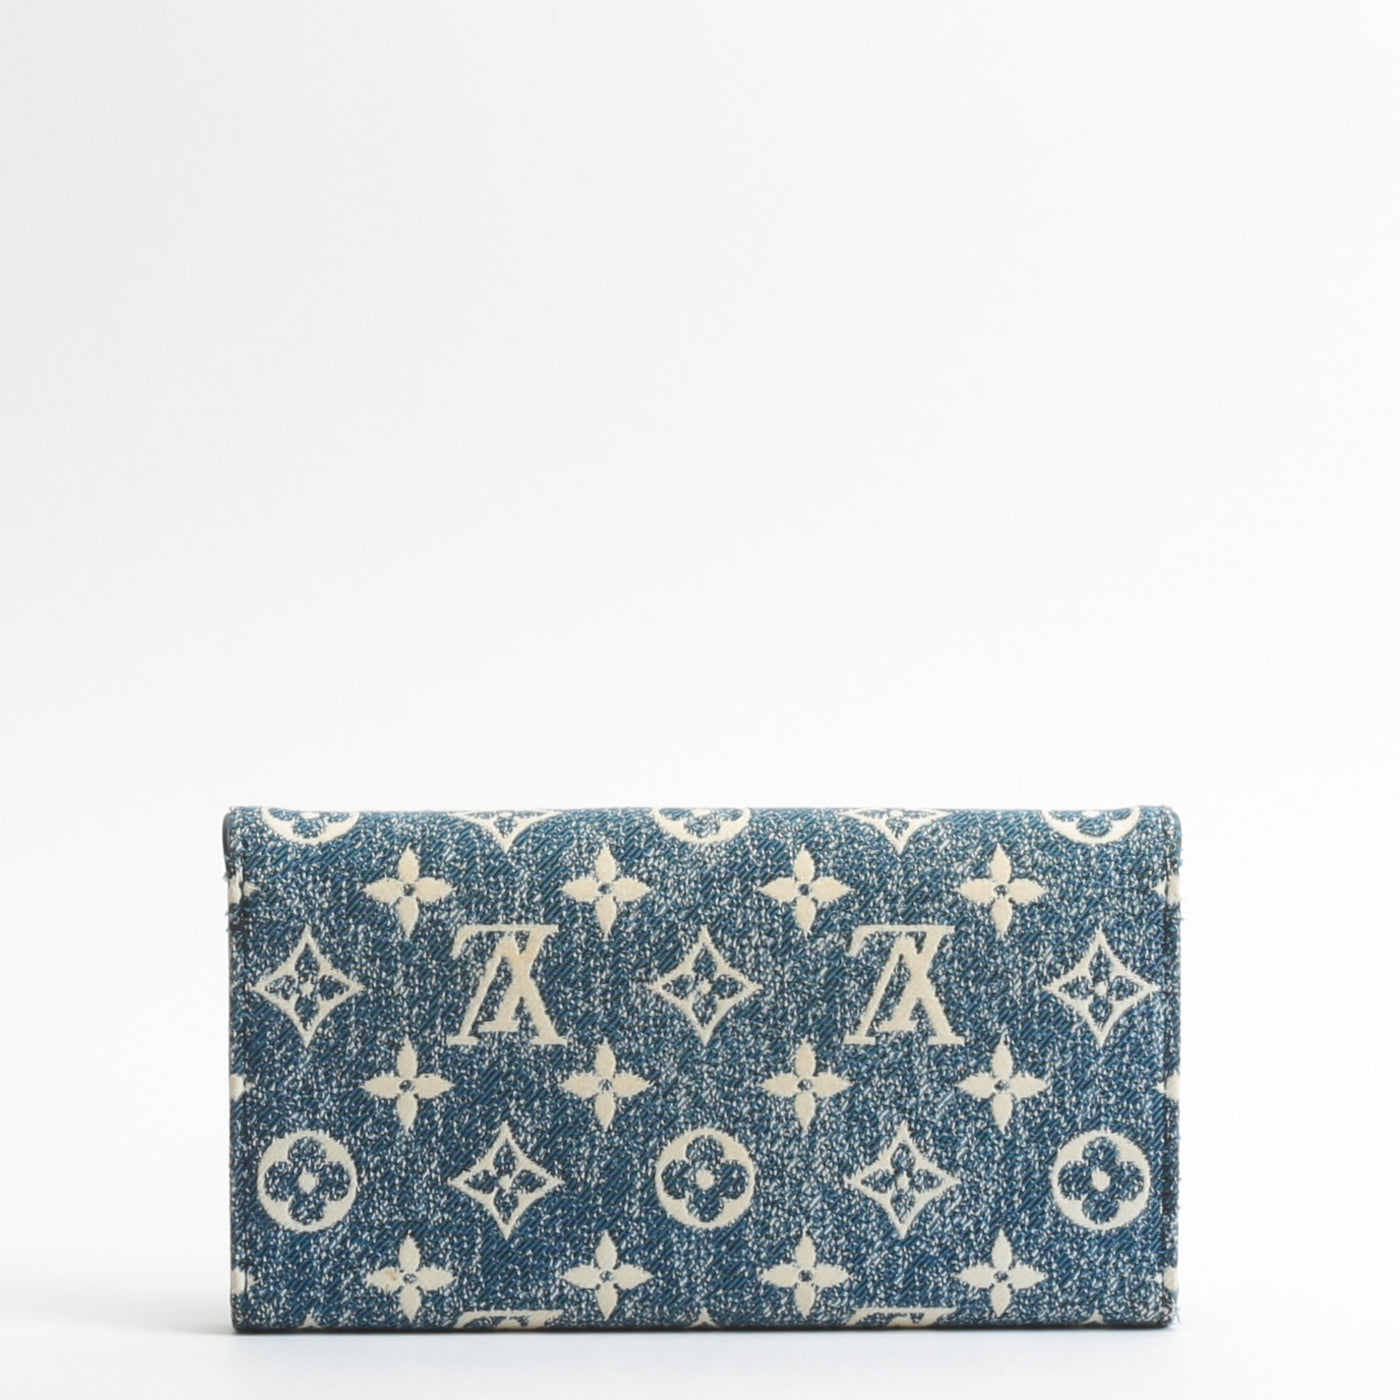 Louis Vuitton releases Monogram Jacquard Denim